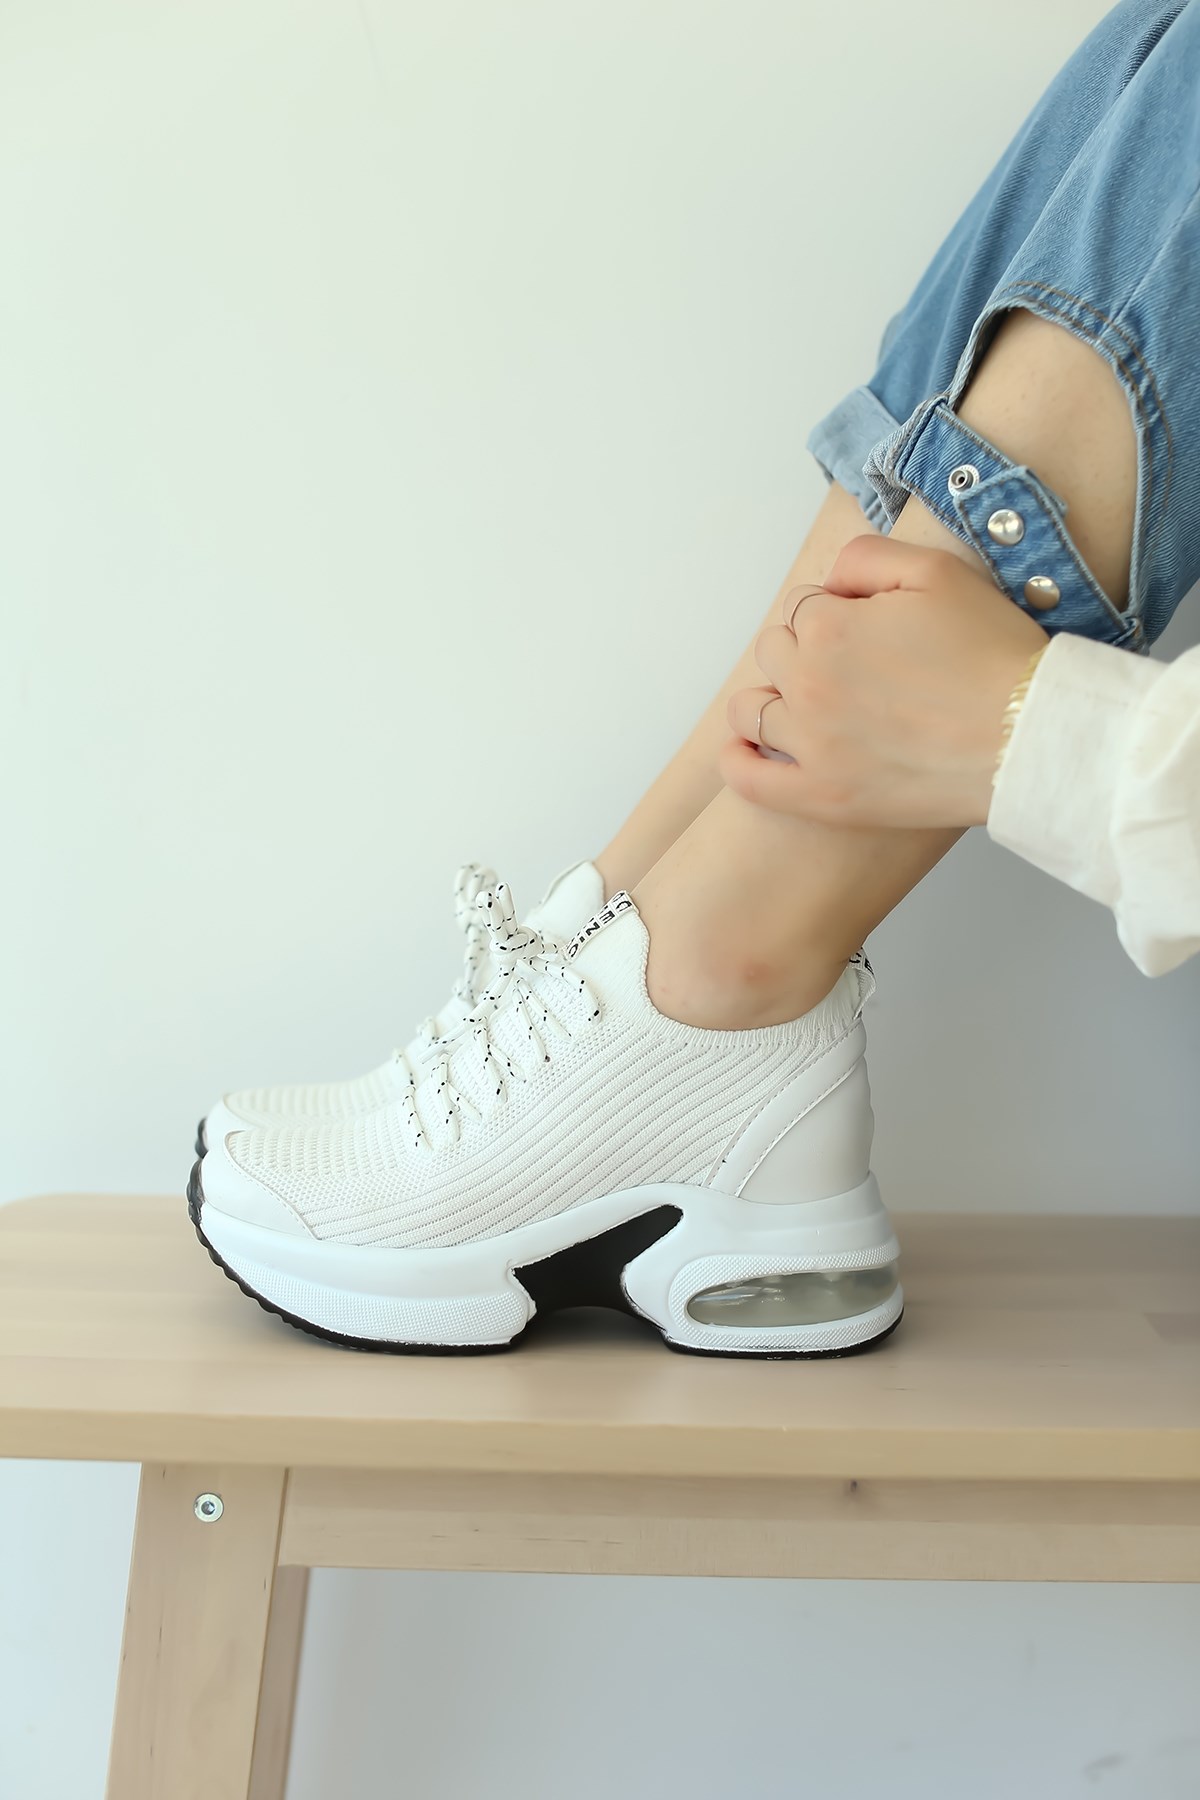 Penna Beyaz Gizli Topuk Air Tabanlı 4Cm Taban :3Cm Toplam: 7Cm Bayan Spor  Ayakkabı Sneakers